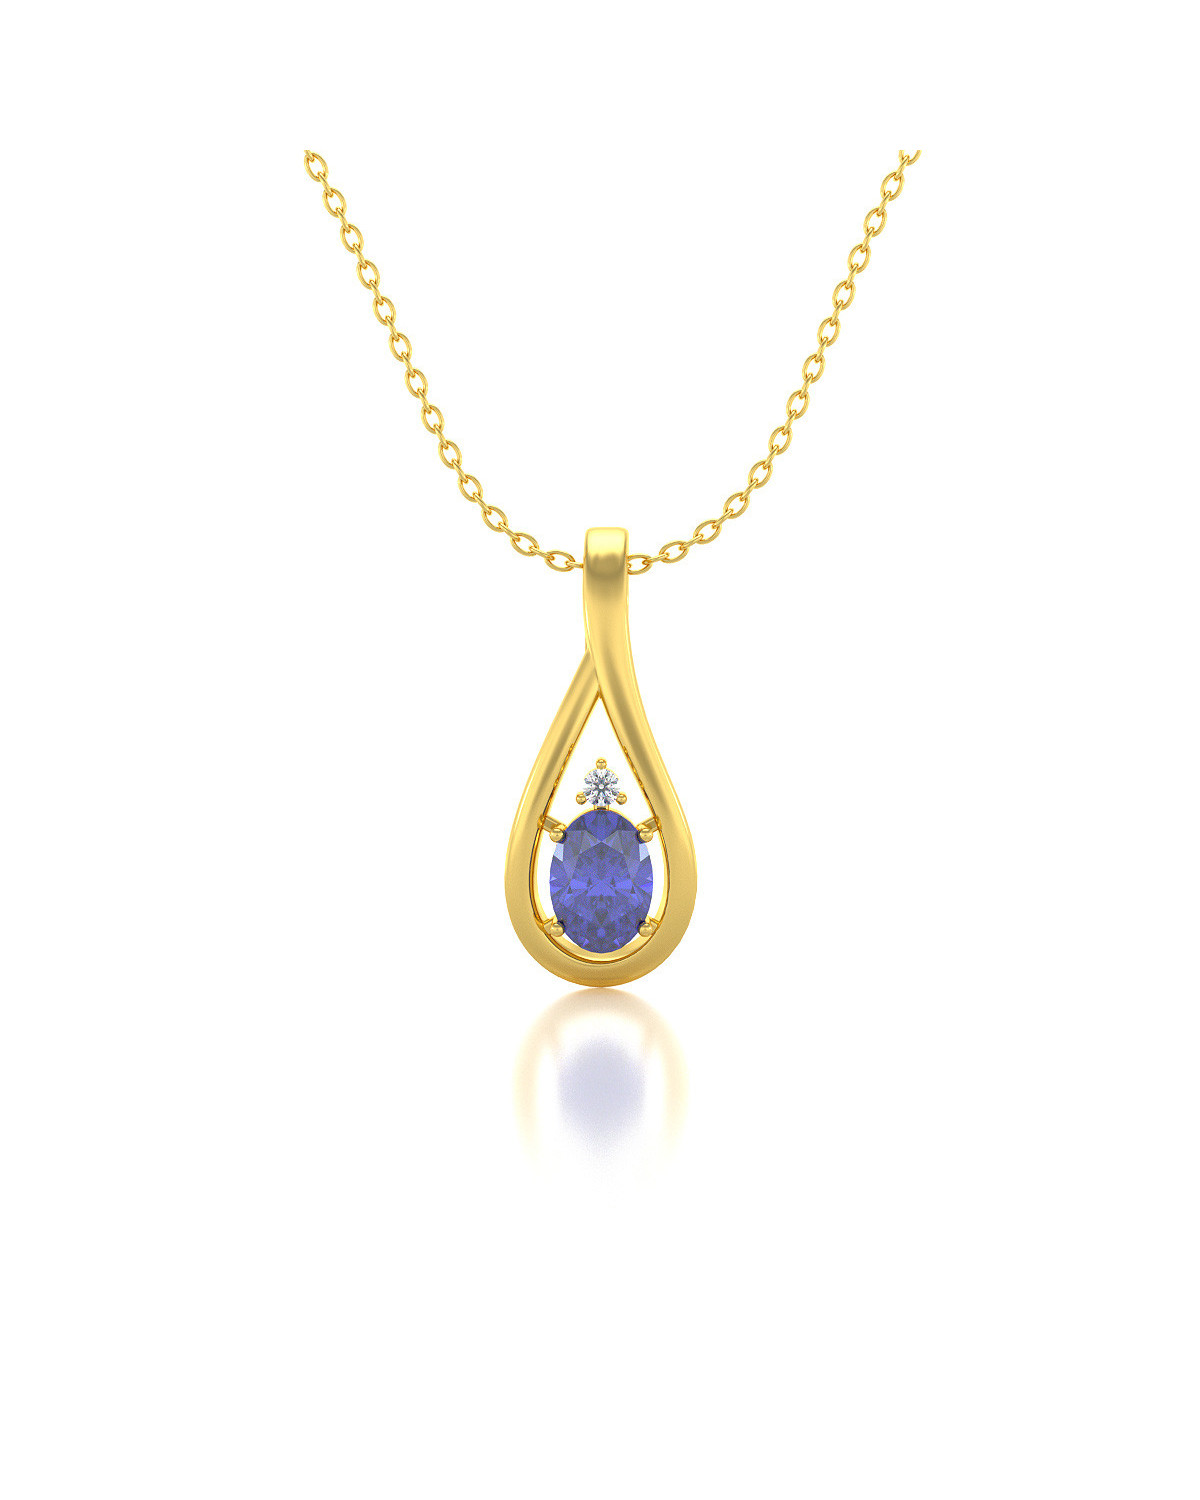 Gold Tanzanite Diamonds Necklace Pendant Gold Chain included